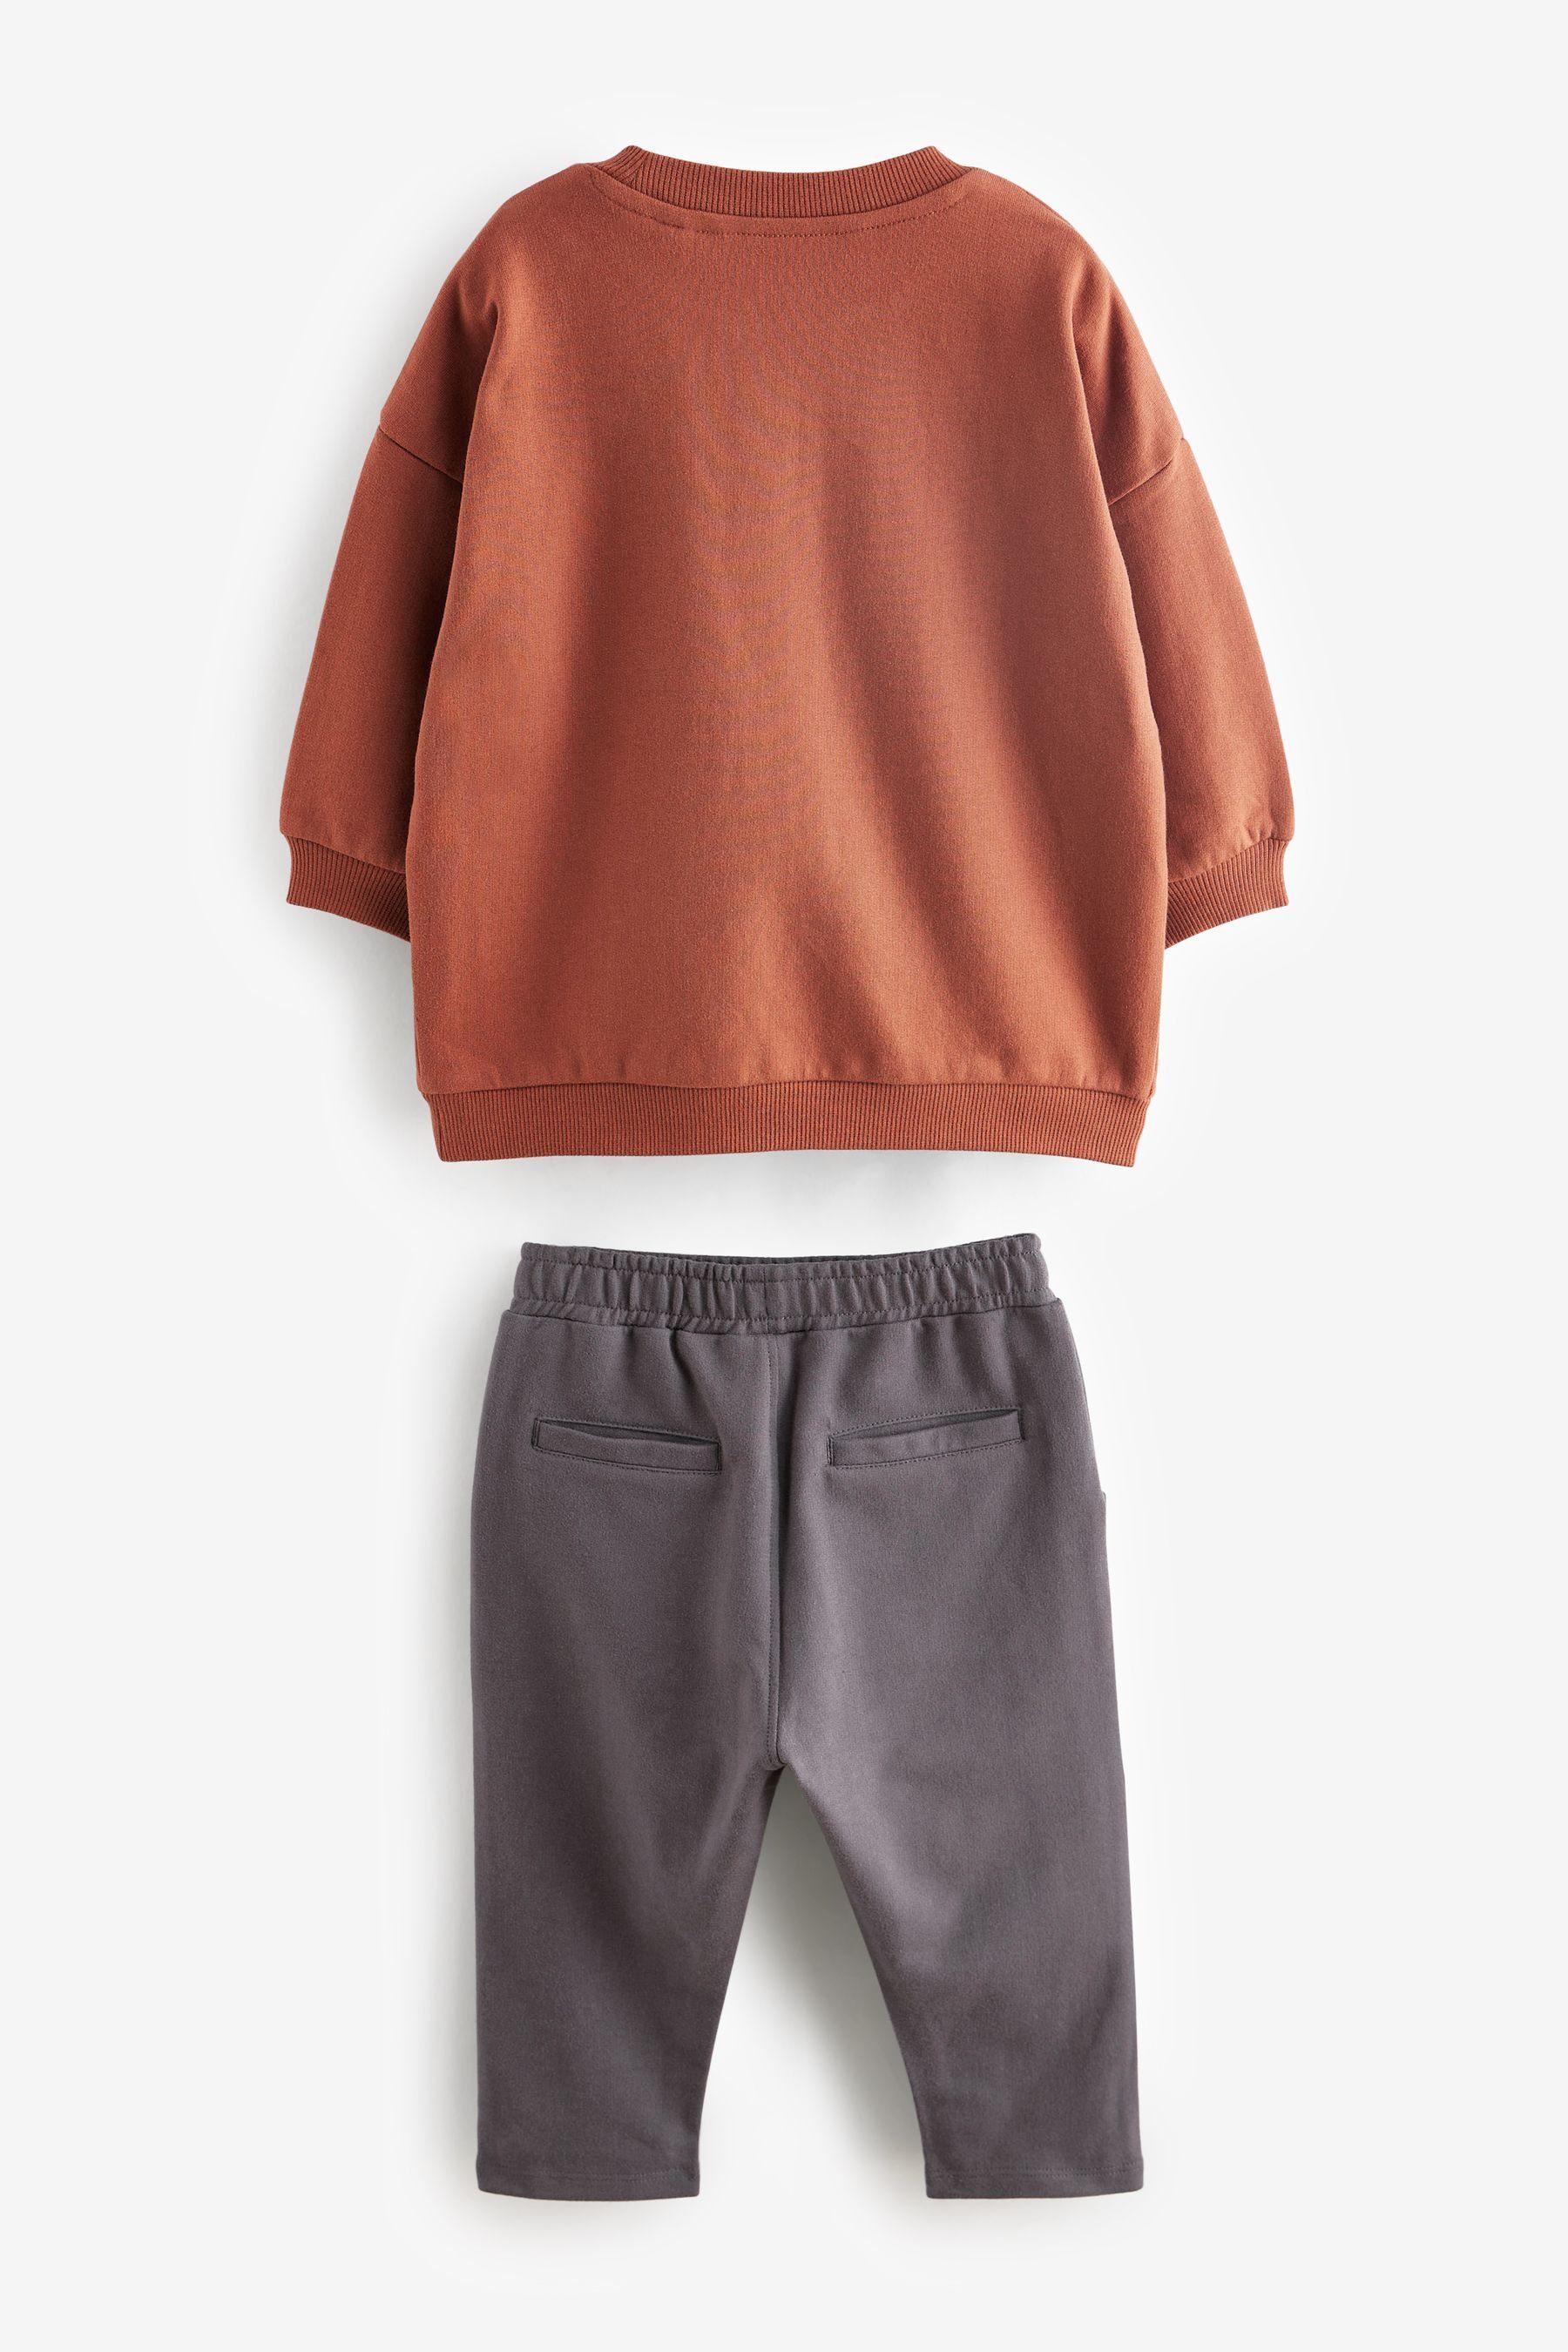 Next Sweatanzug Sweatshirt mit Motiv (2-tlg) Jogginghose Logo und Set Rust Brown/Grey Oversized im